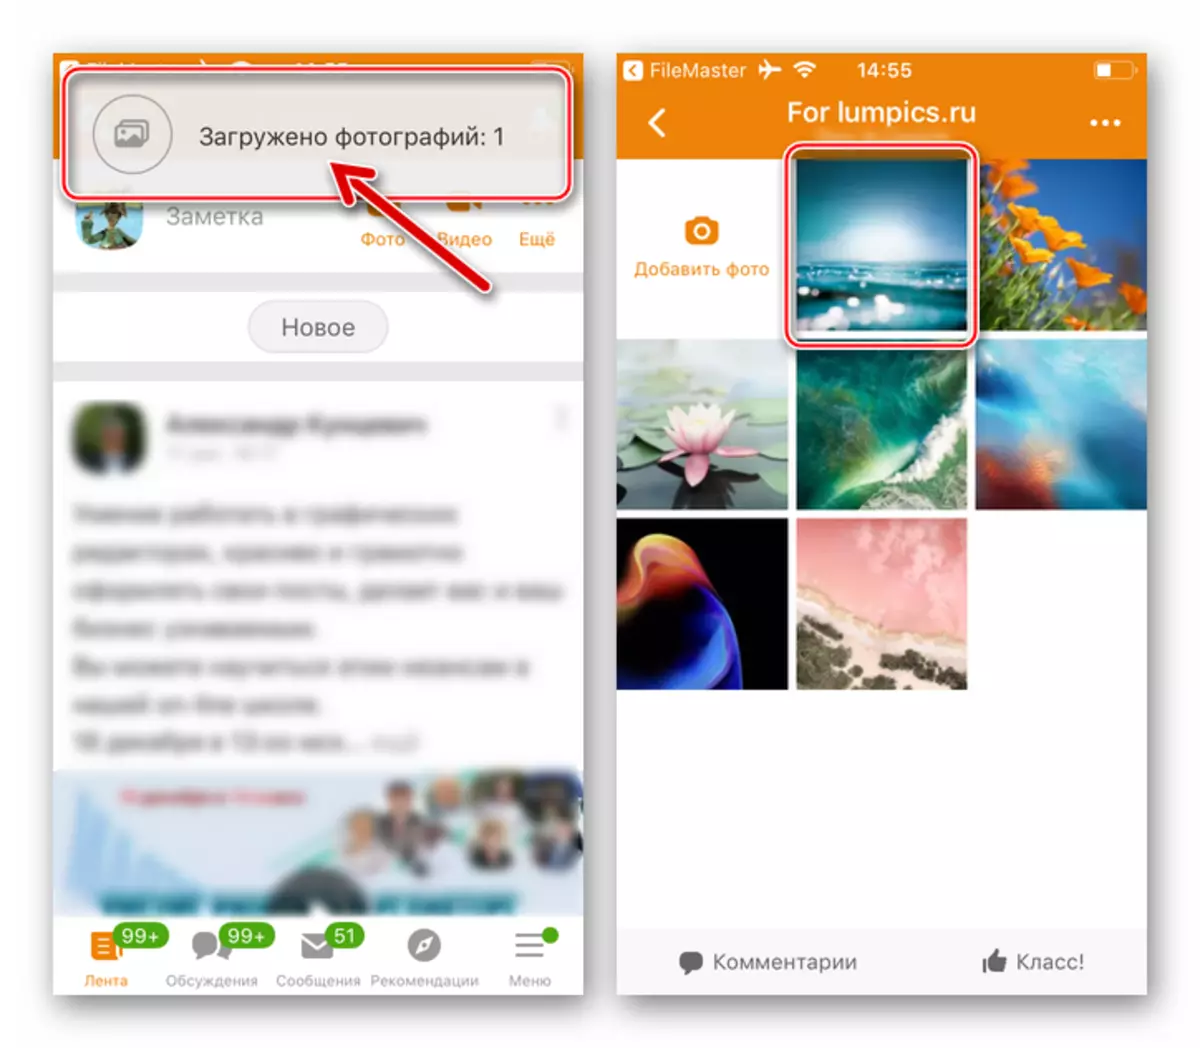 ODnoklassniki ing iPhone Download Foto ing Album ing Jaringan Sosial Saka Pangatur File wis rampung